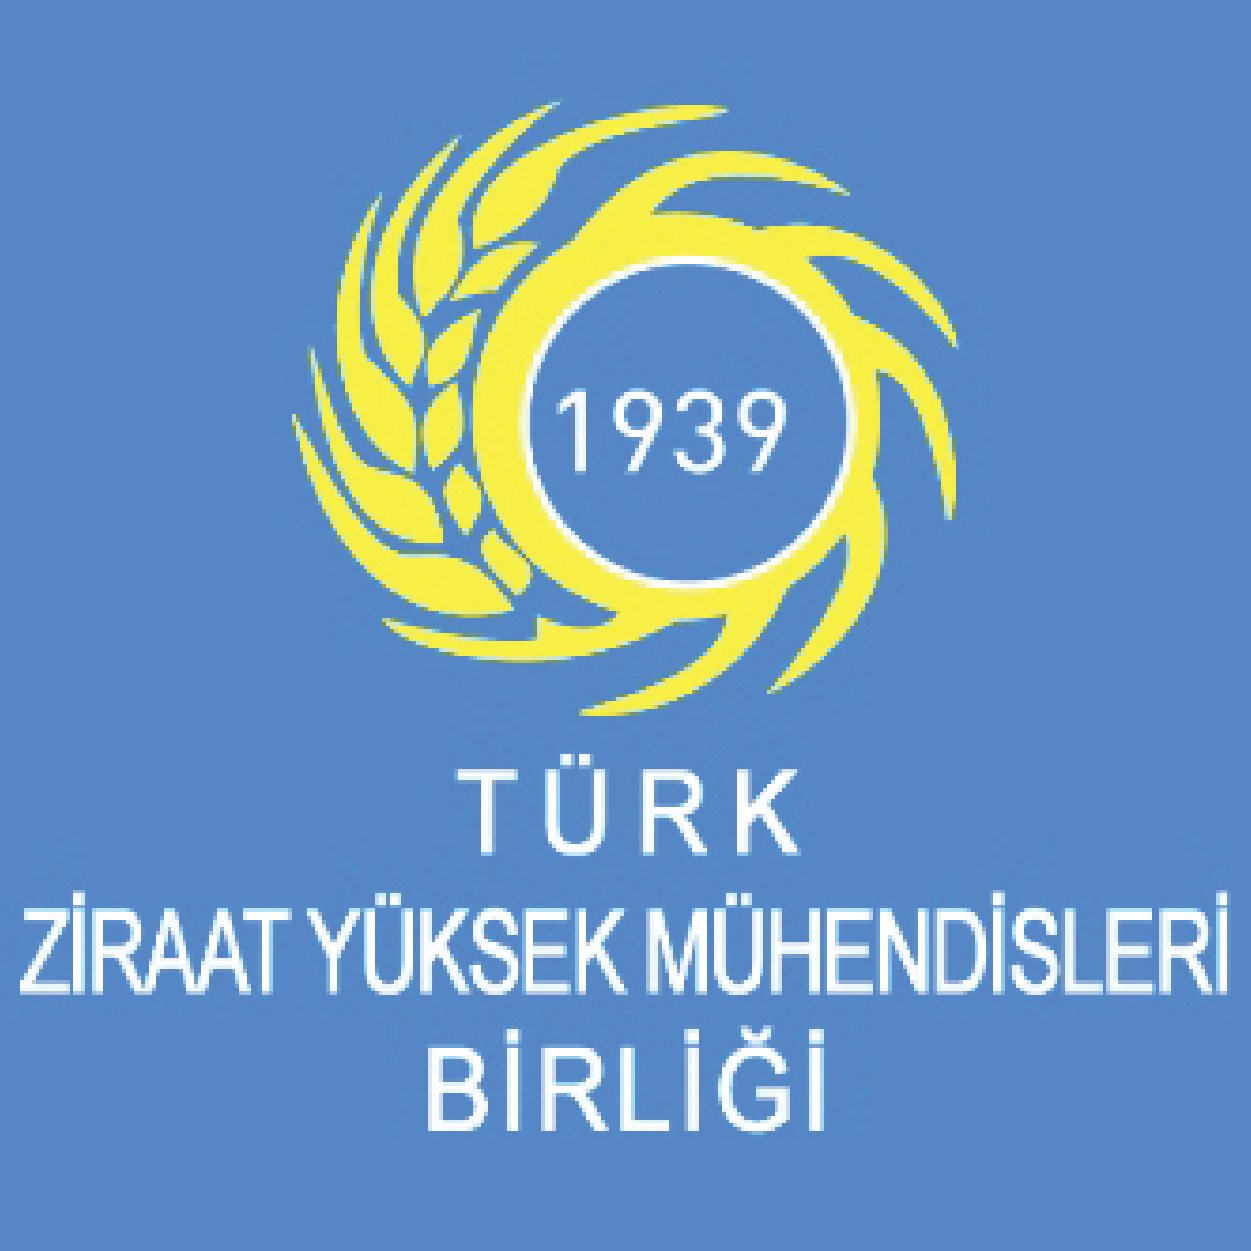 Türk Ziraat Yüksek Mühendisleri Birliği 